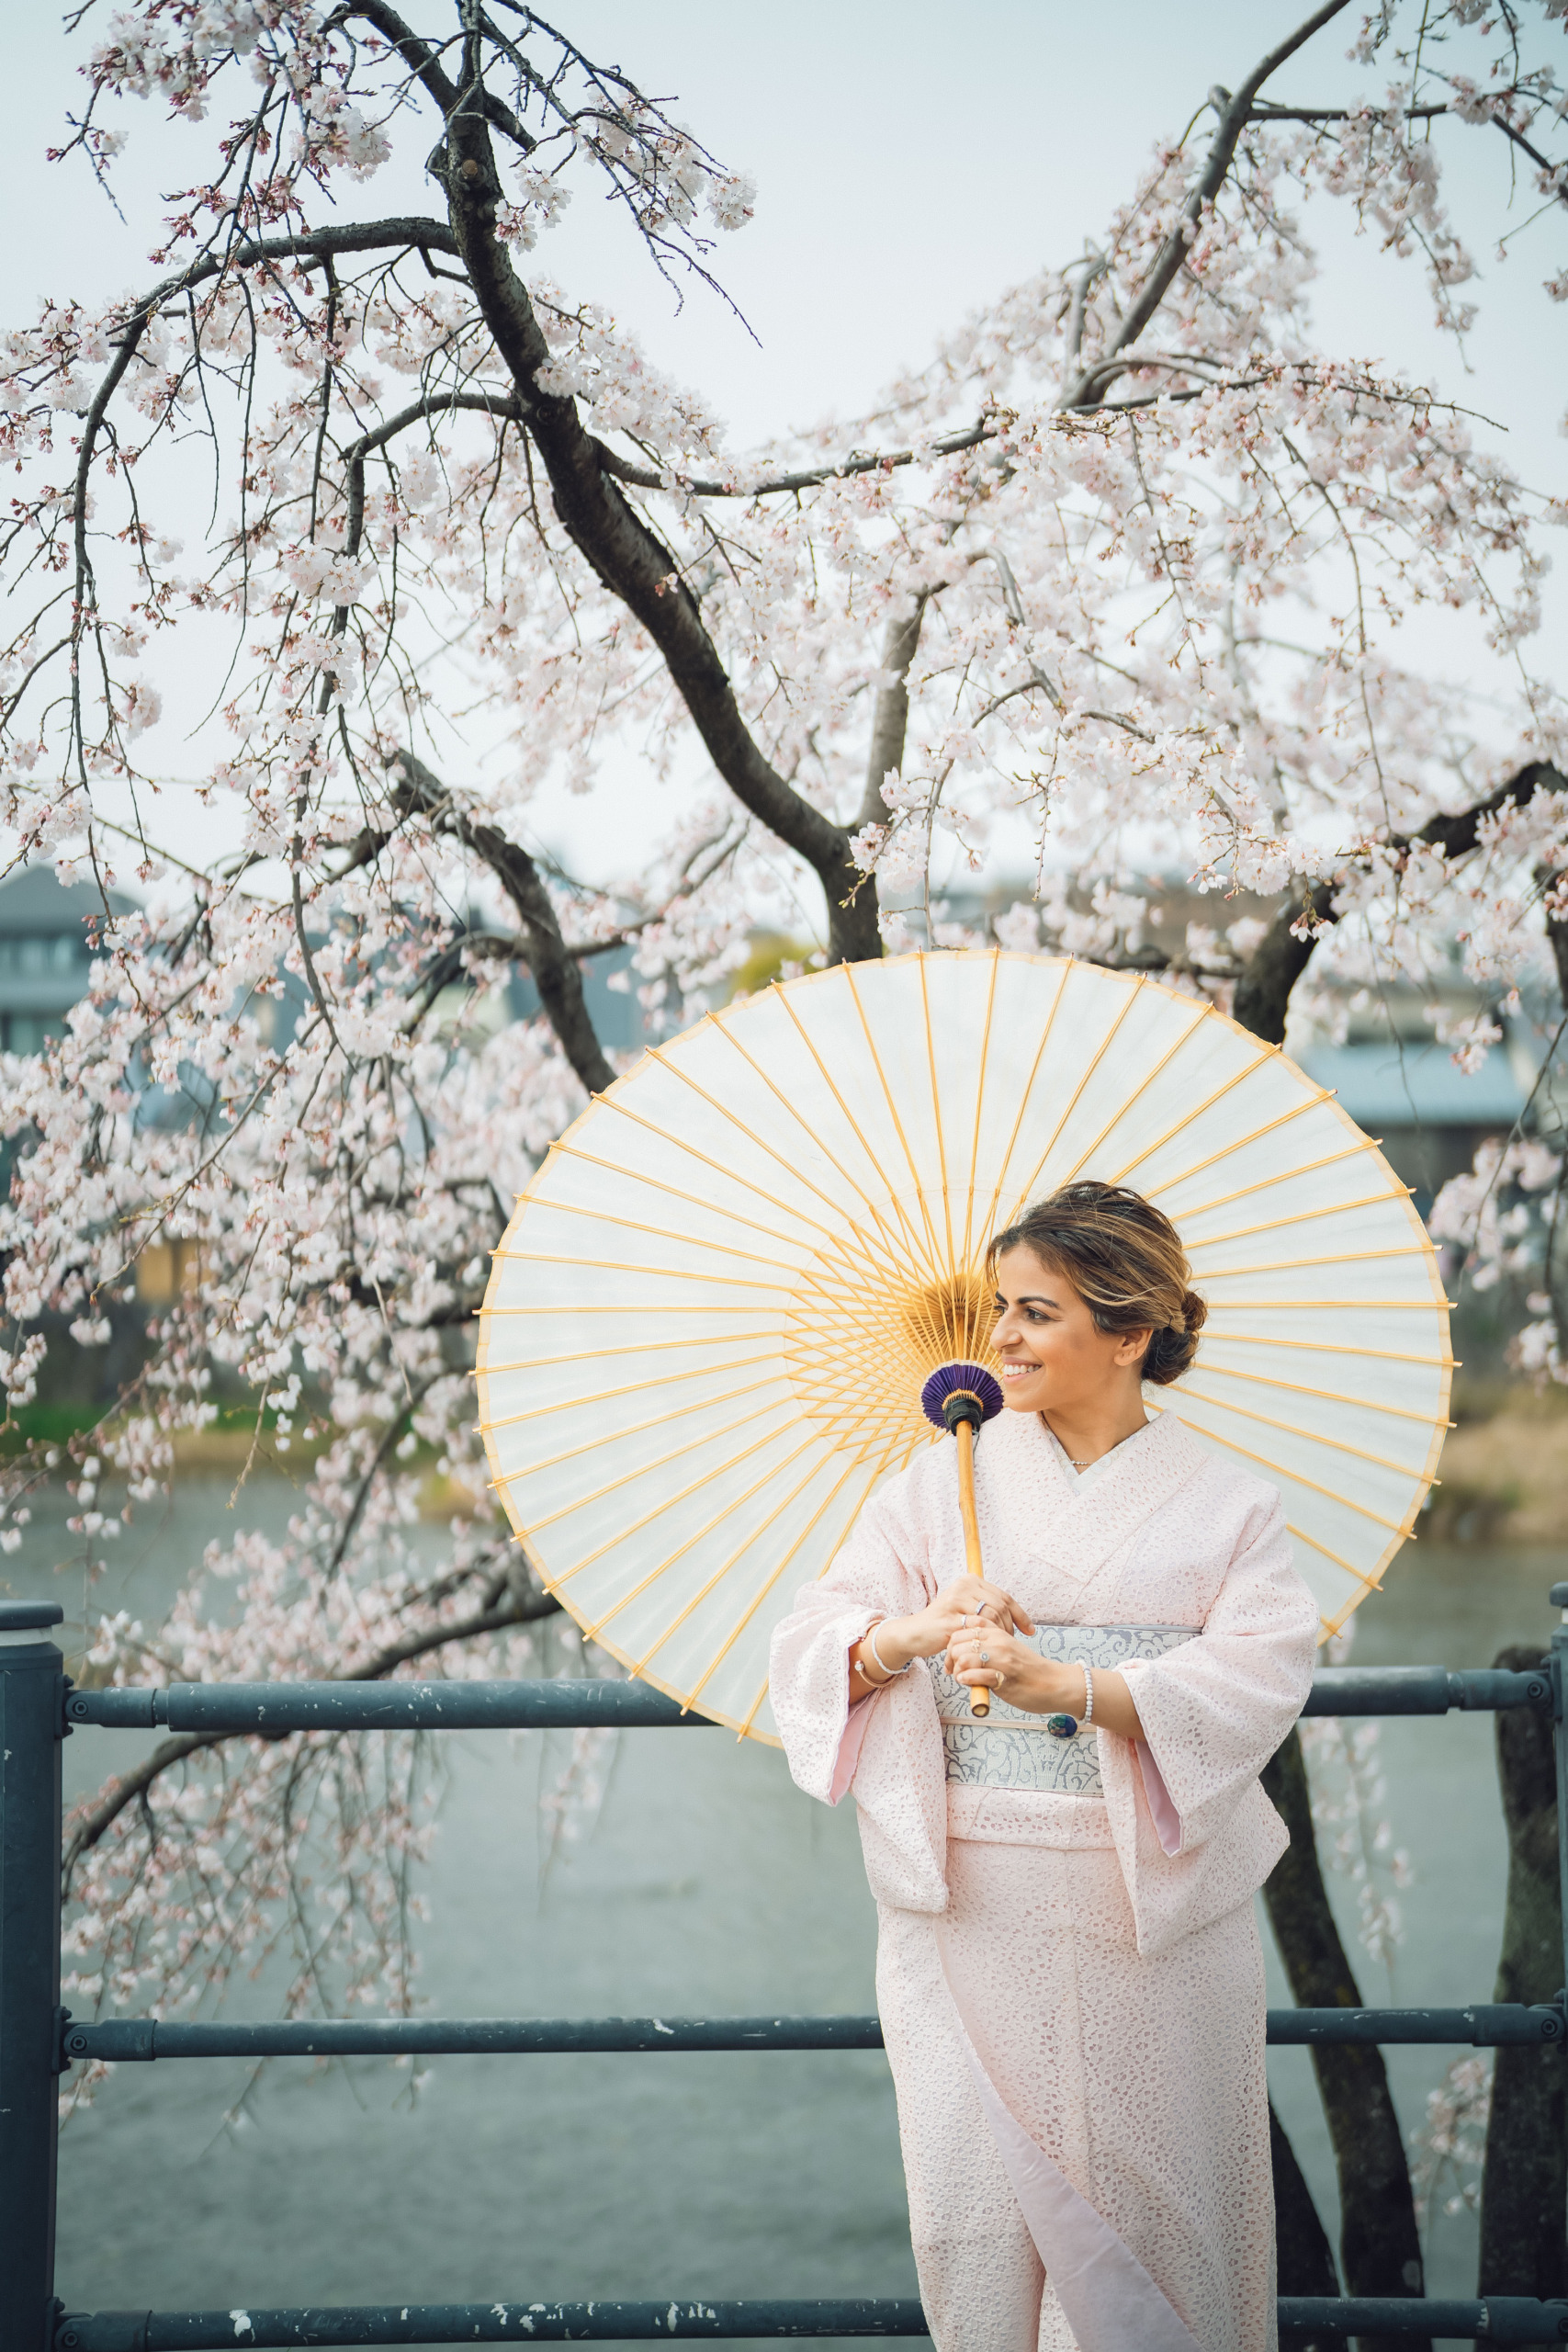 Kimono photoshoot woman